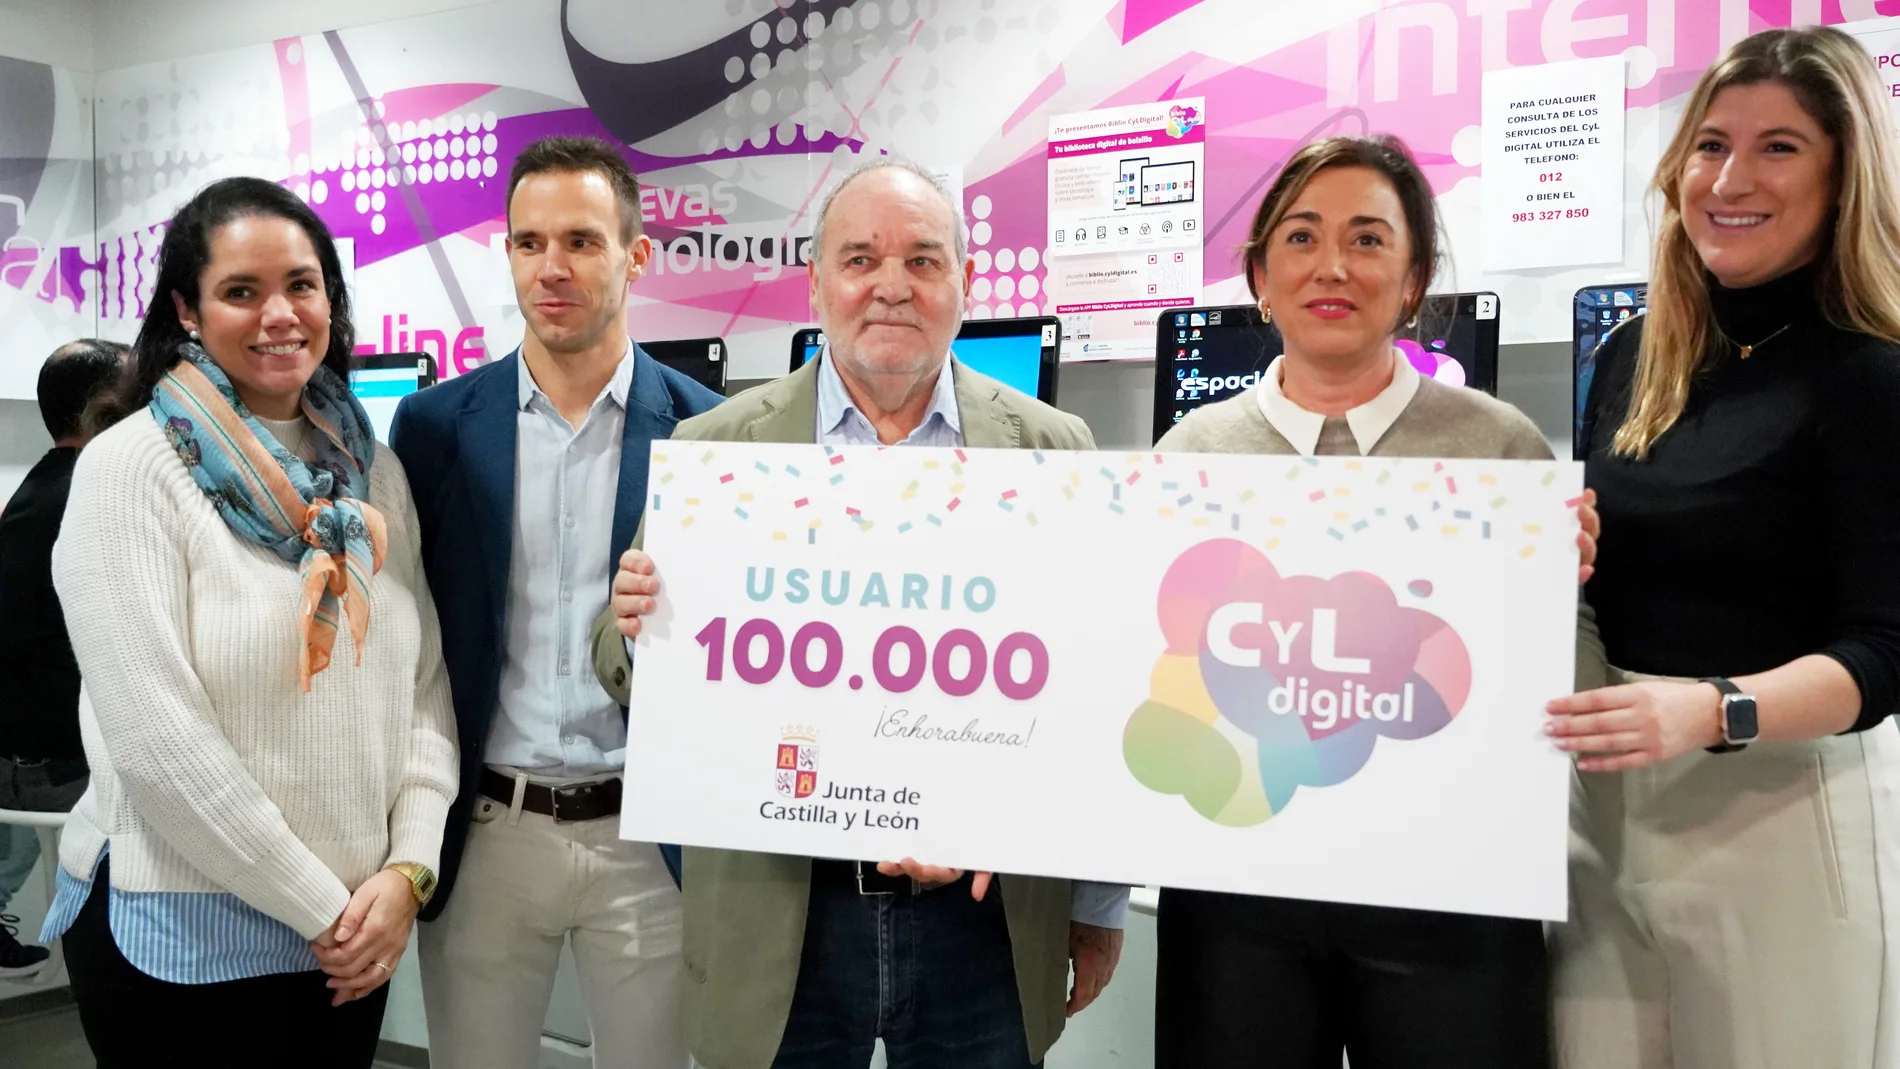 González Corral posa con José Luis, el usuario cien mil del Programa CyL Digital